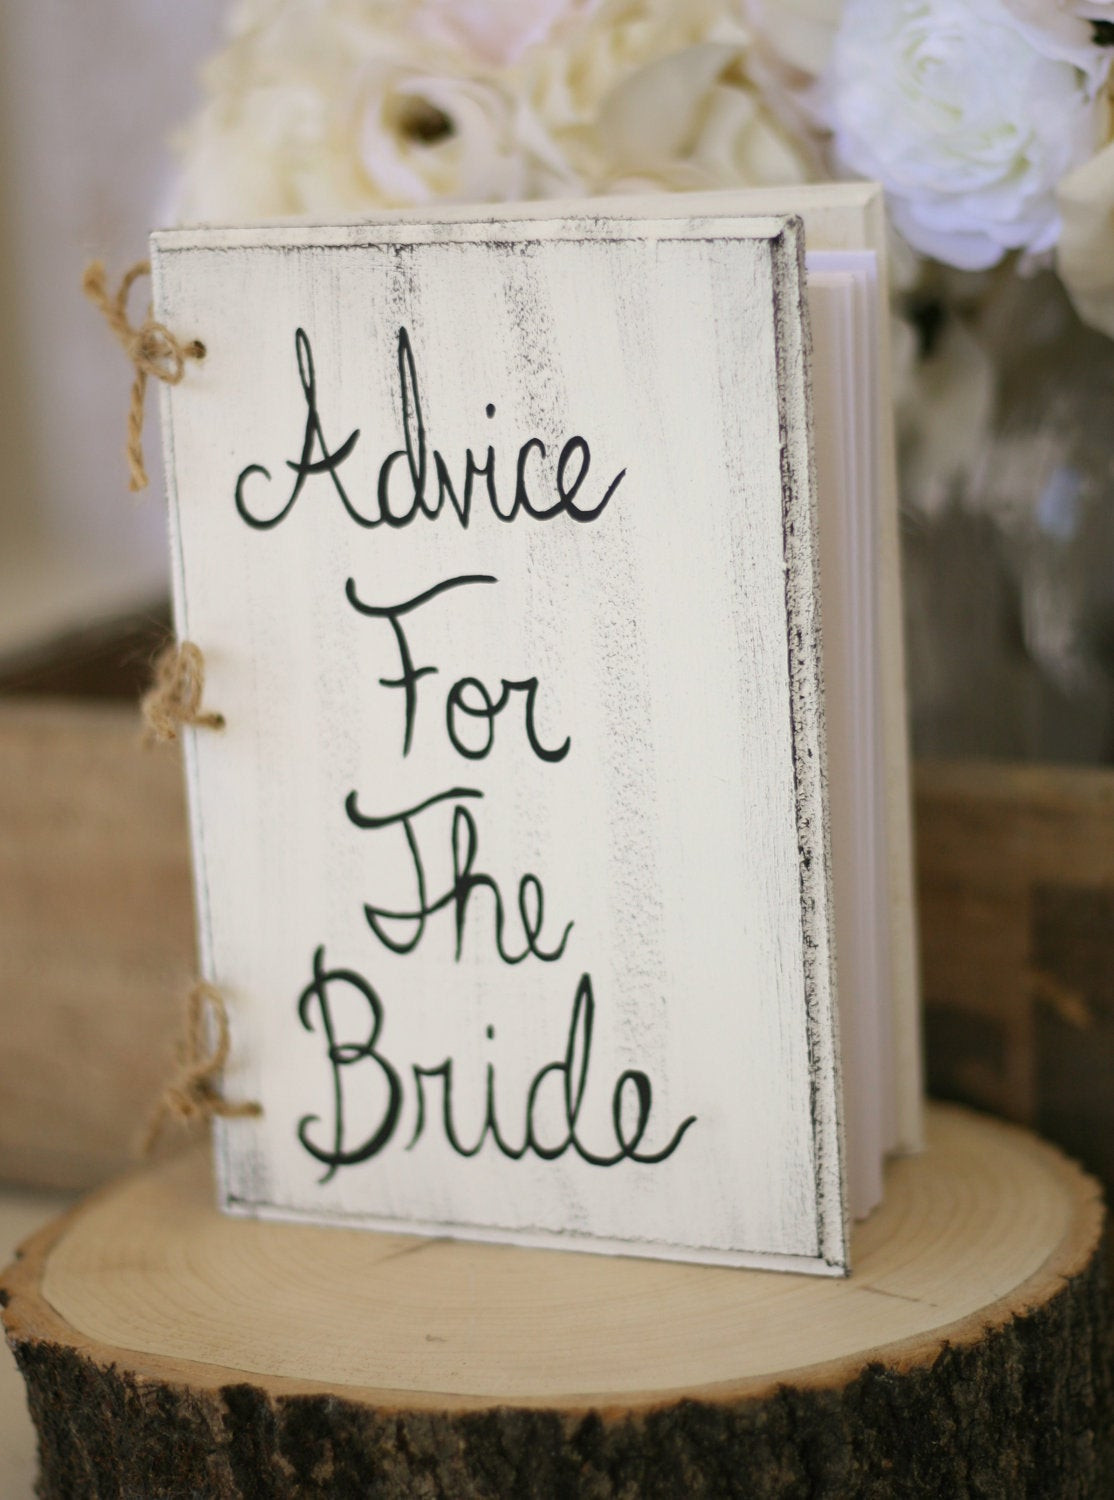 Shabby Chic Wedding Guest Book Ideas
 Bridal Shower Guest Book Shabby Chic Wedding Decor by